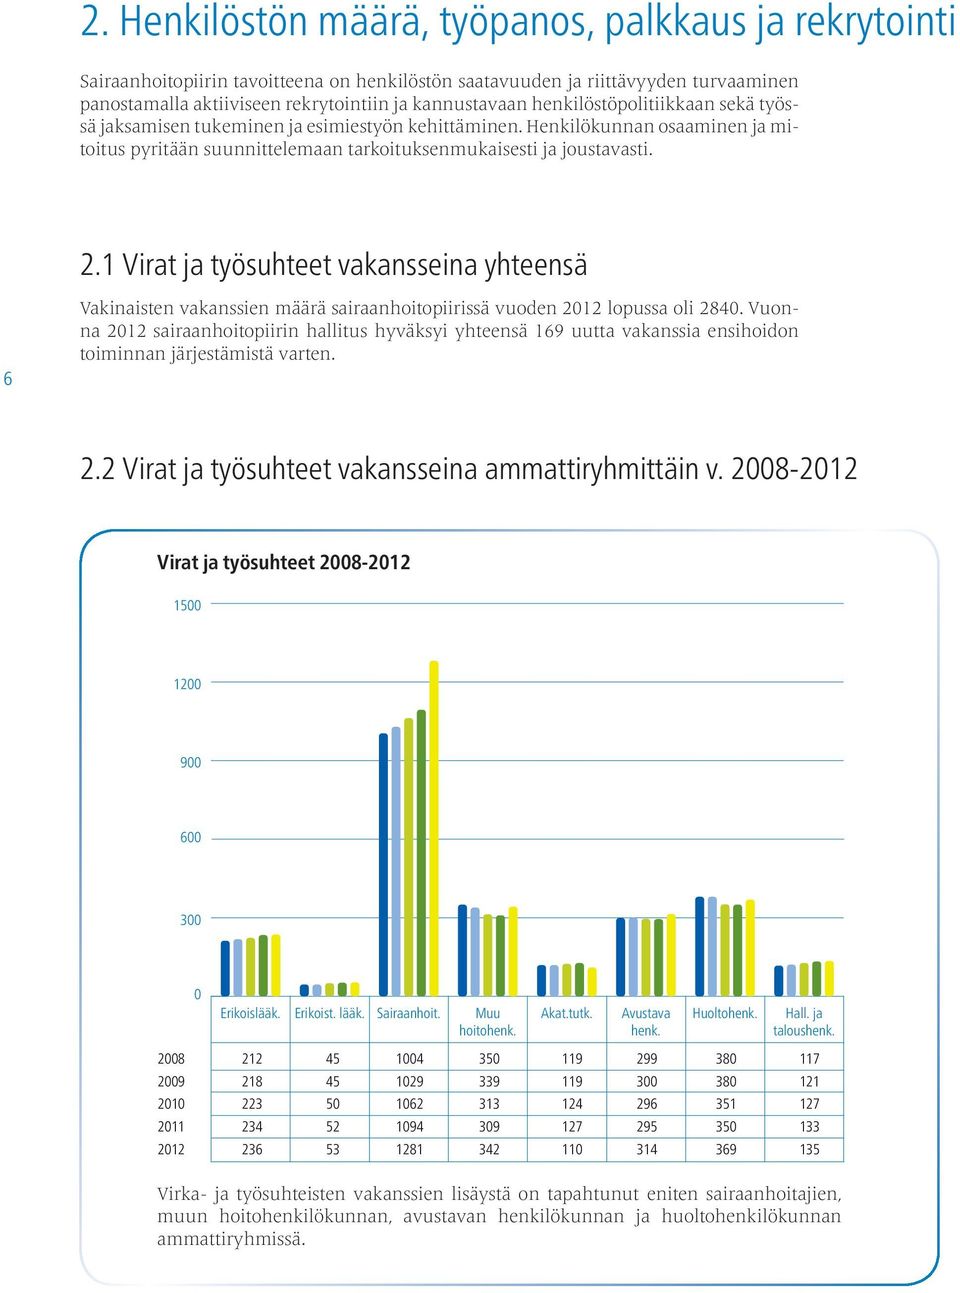 1 Virat ja työsuhteet vakansseina yhteensä 6 Vakinaisten vakanssien määrä sairaanhoitopiirissä vuoden 2012 lopussa oli 2840.